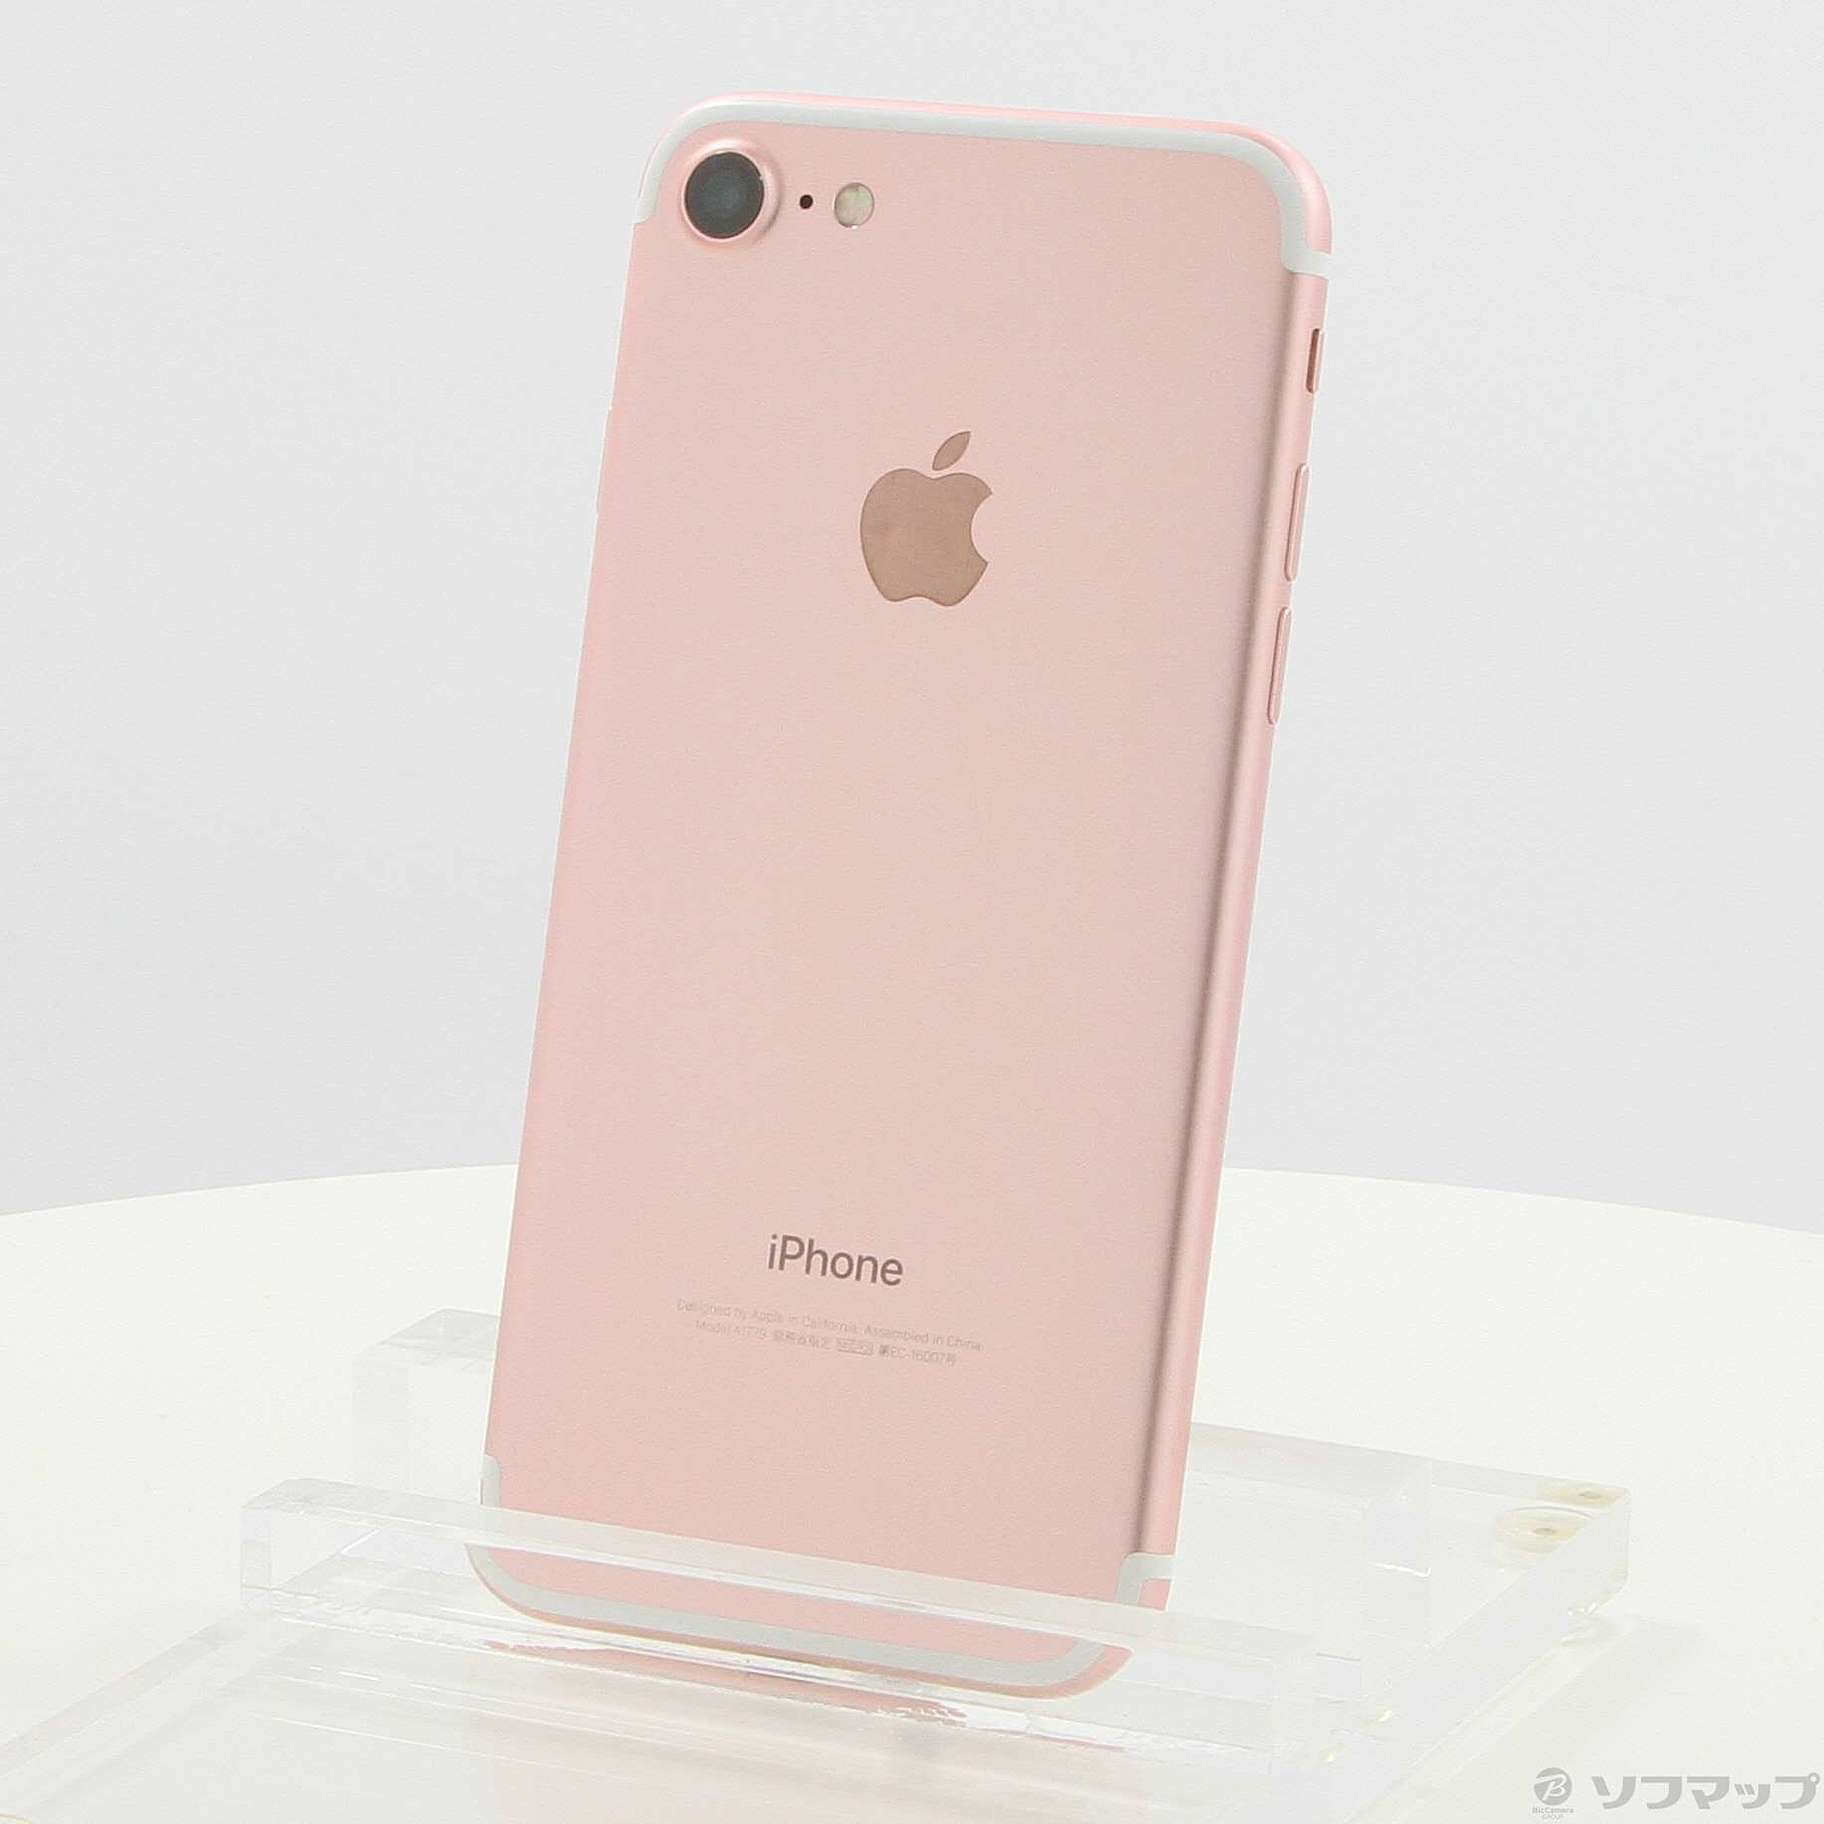 iPhone7 128GB ローズゴールド(ピンク) au